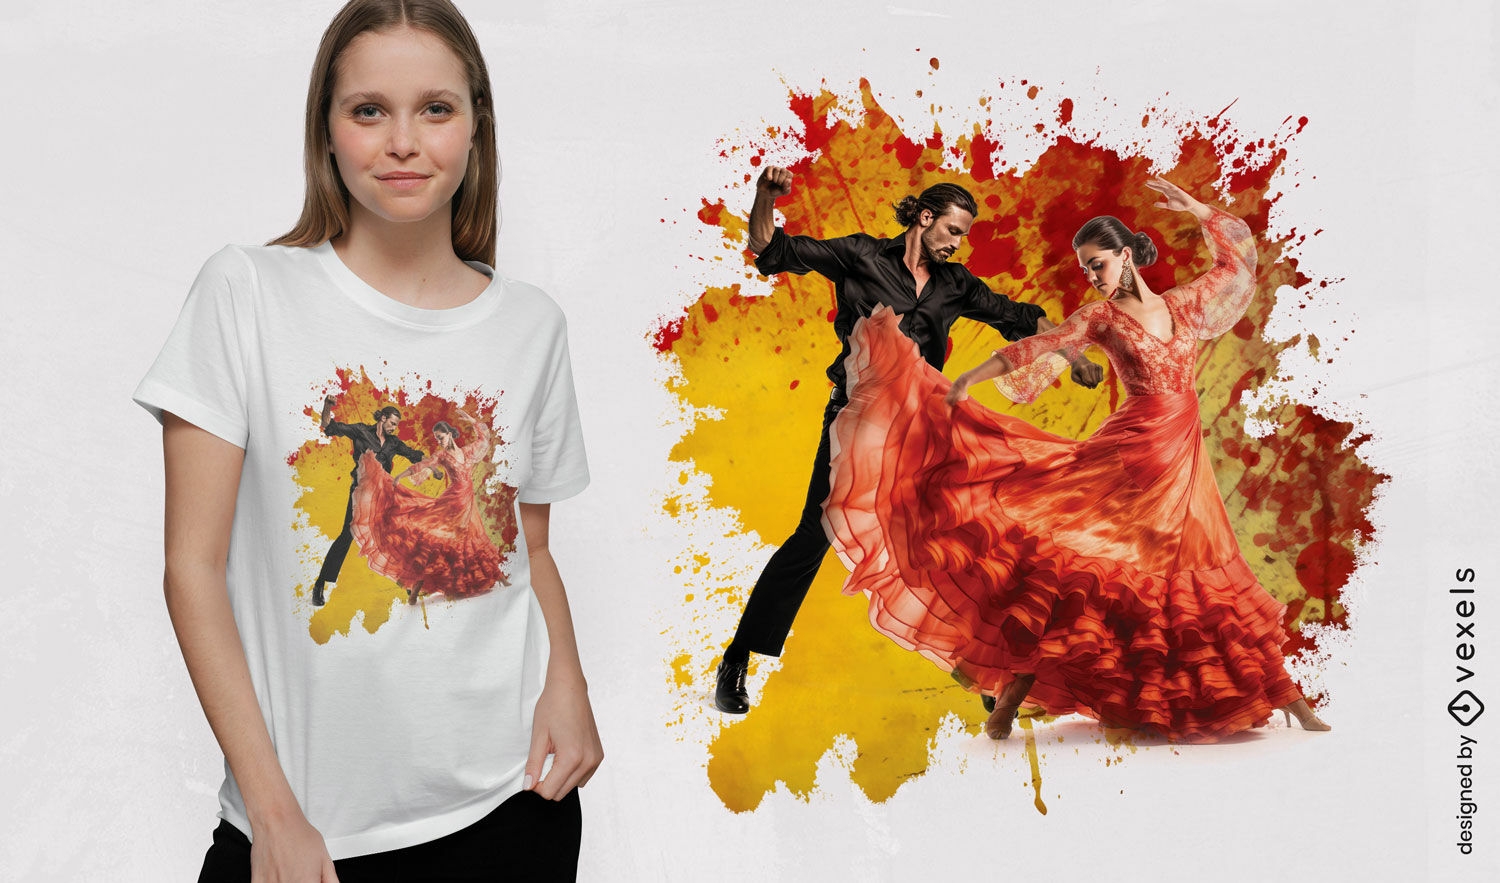 Dise?o de camiseta de baile flamenco.